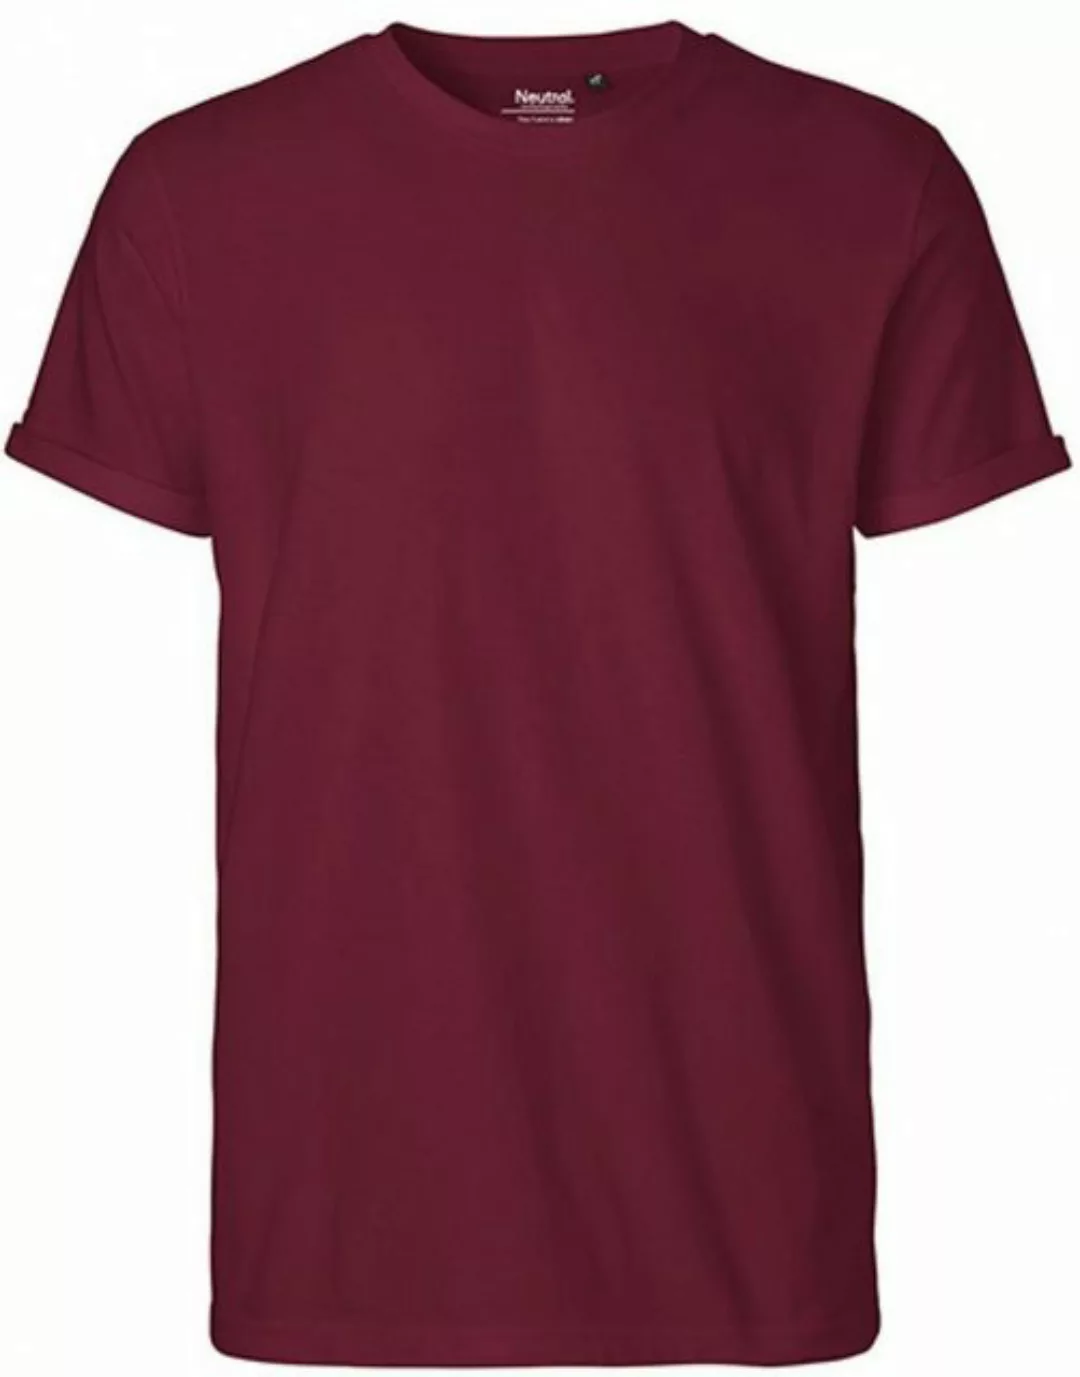 Neutral Rundhalsshirt Herren Roll Up Sleeve T-Shirt / 100% Fairtrade Baumwo günstig online kaufen